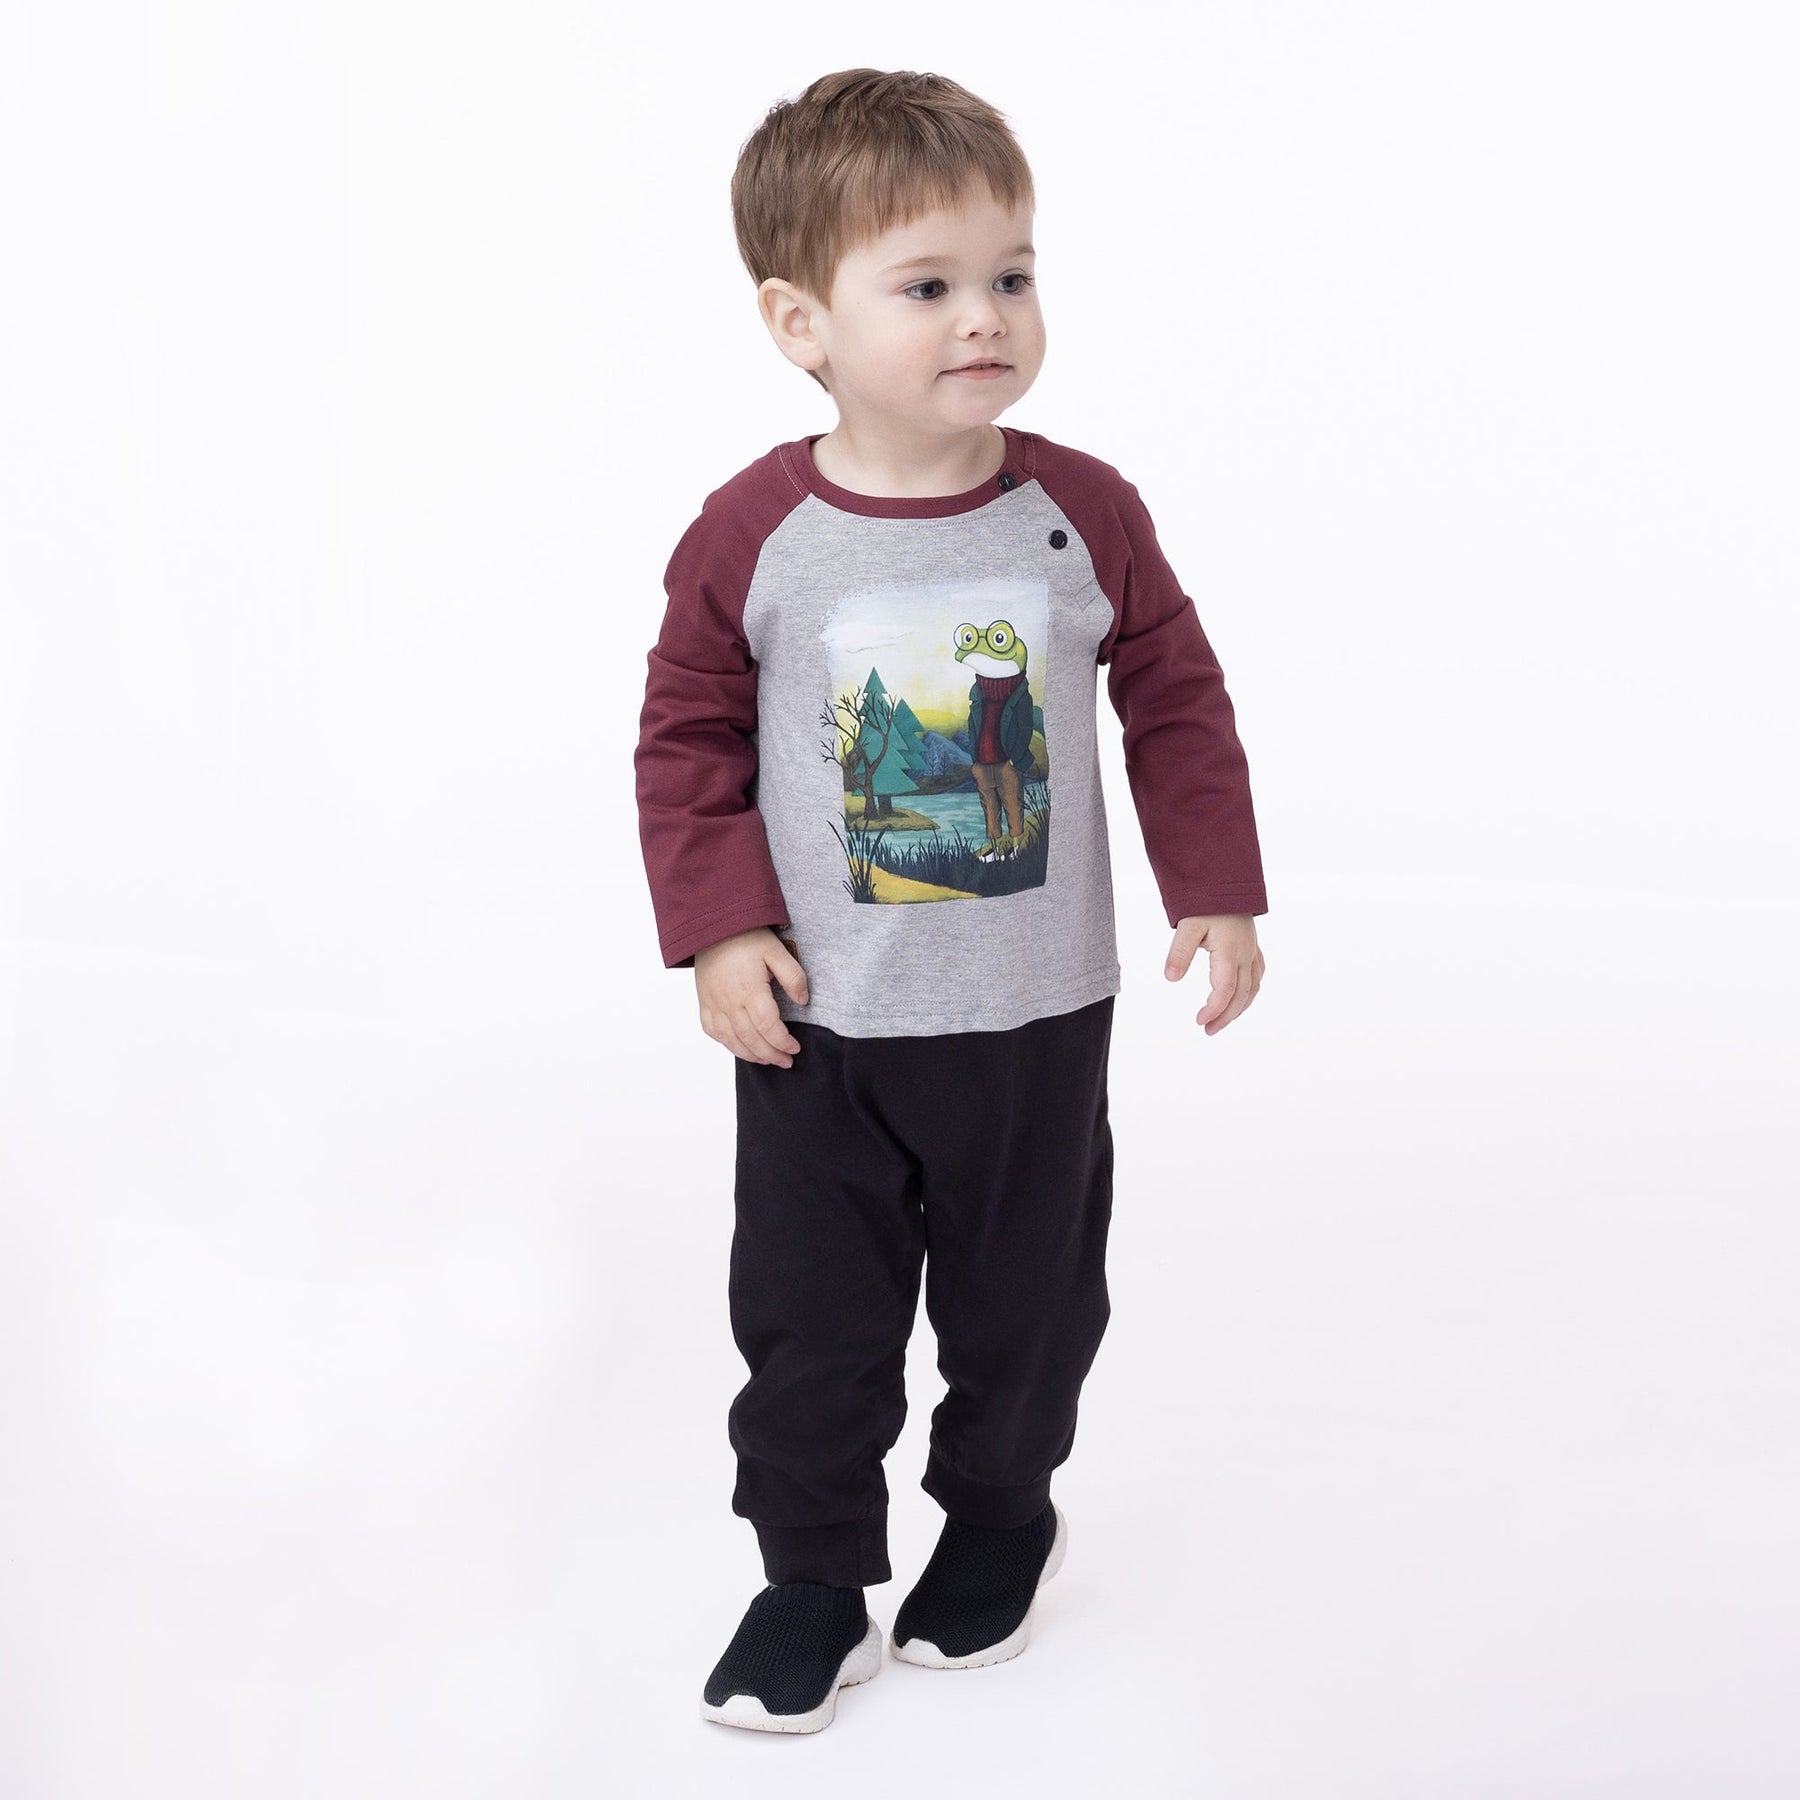 Barboteuse pour bébé garçon par Nanö | F2357-02 Bordeaux | Boutique Flos, vêtements mode pour bébés et enfants